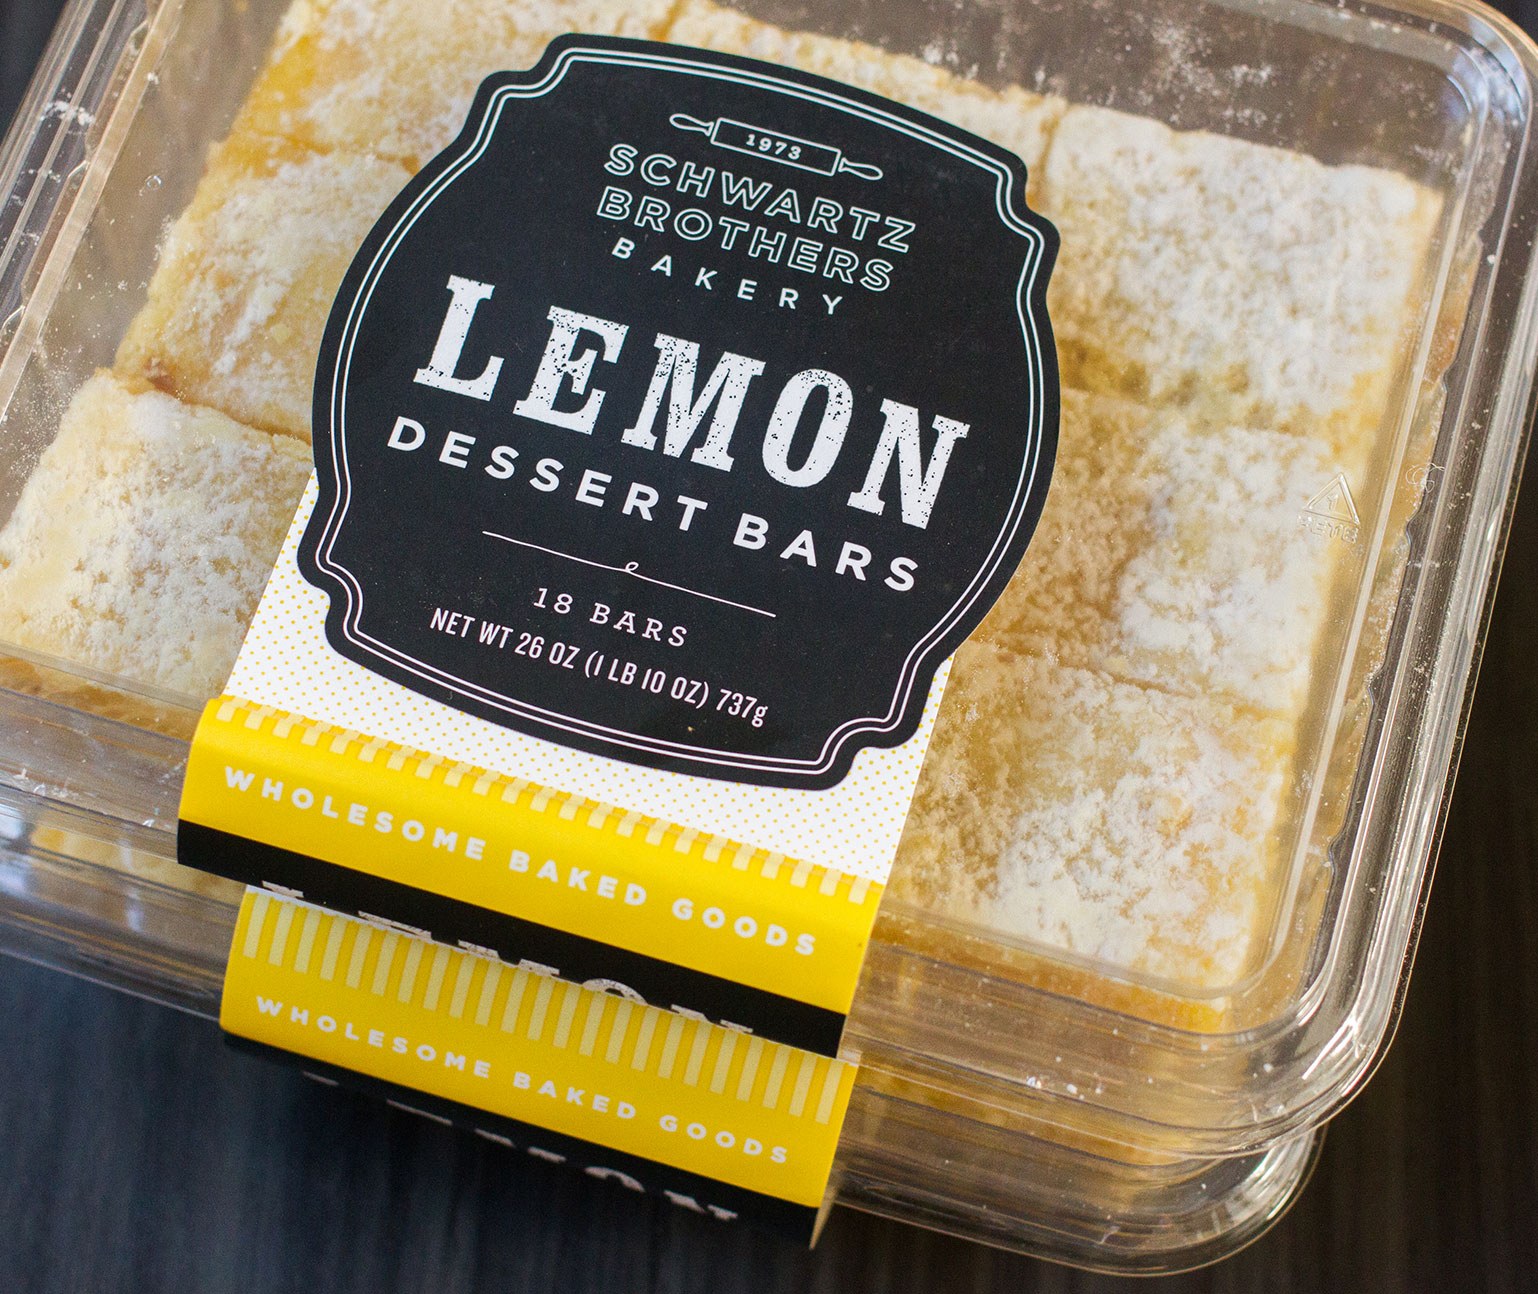 Schwartz Brothers Lemon Dessert Bars plastic clamshell packaging